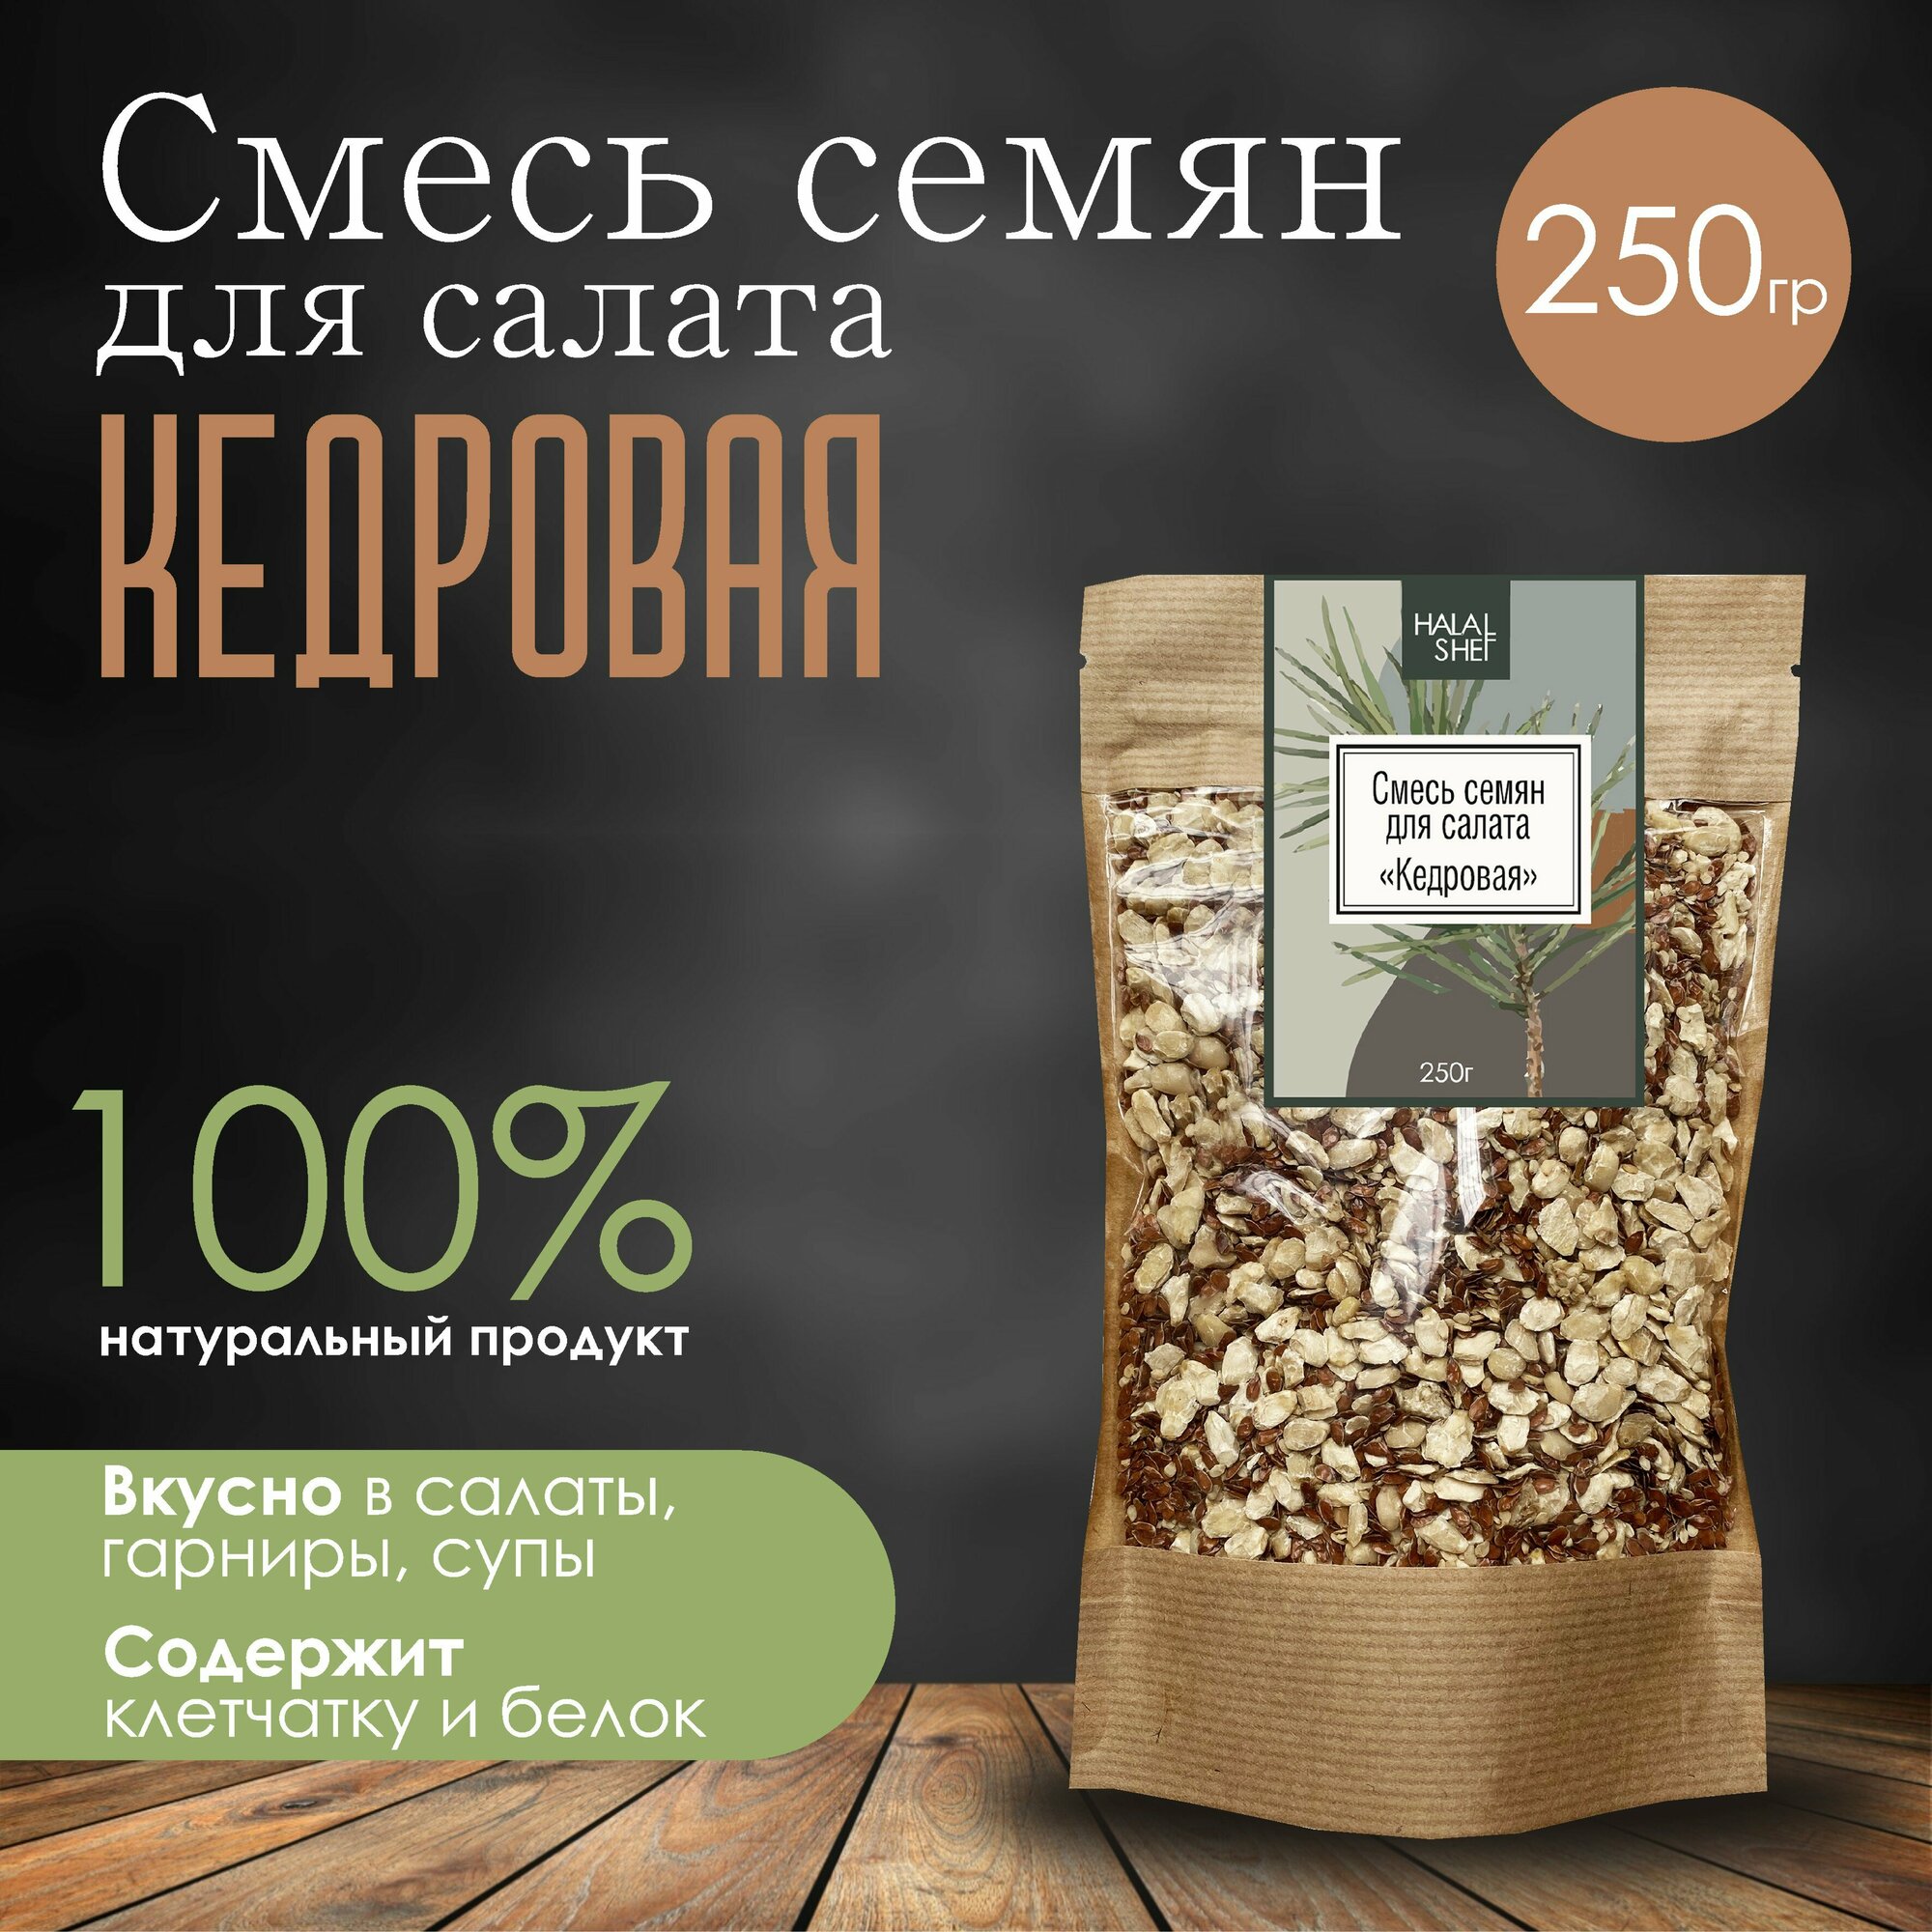 Смесь семян для салата Кедровая 250 гр/Смесь для хлеба